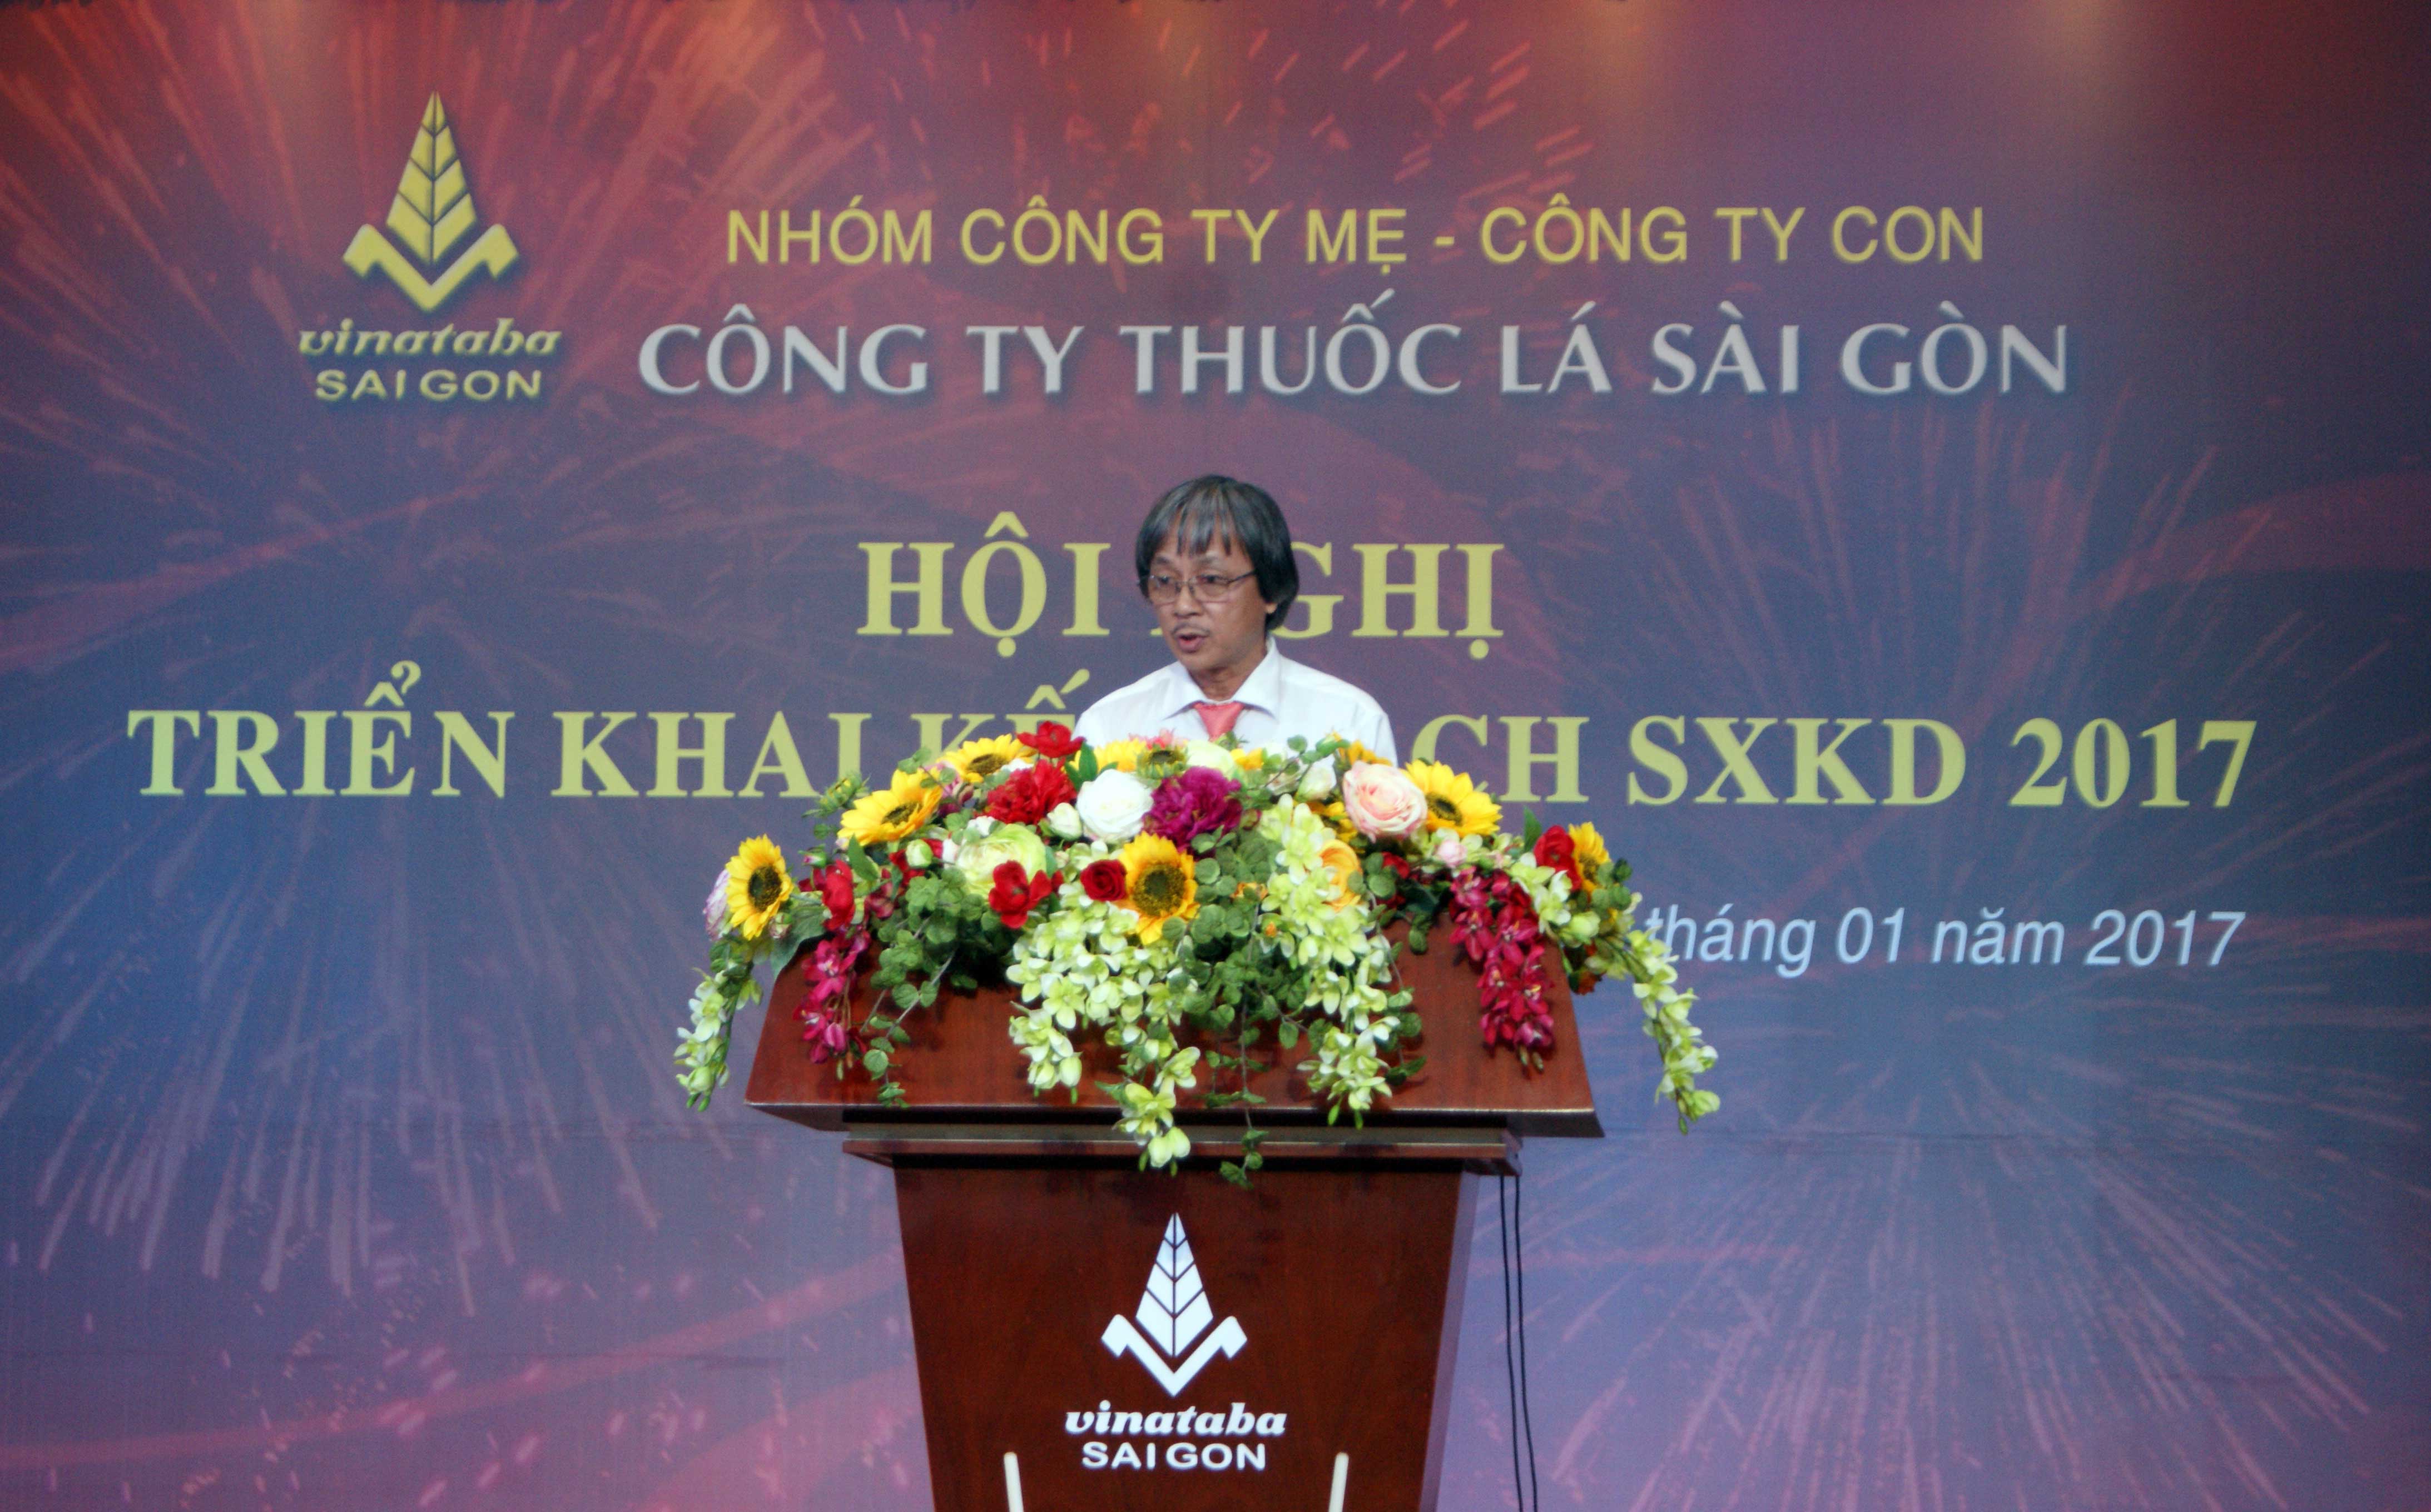 Ông Nguyễn Đăng Tiến - Chủ tịch Công đoàn Công ty Thuốc lá Sài Gòn phát động thi đua năm 2017